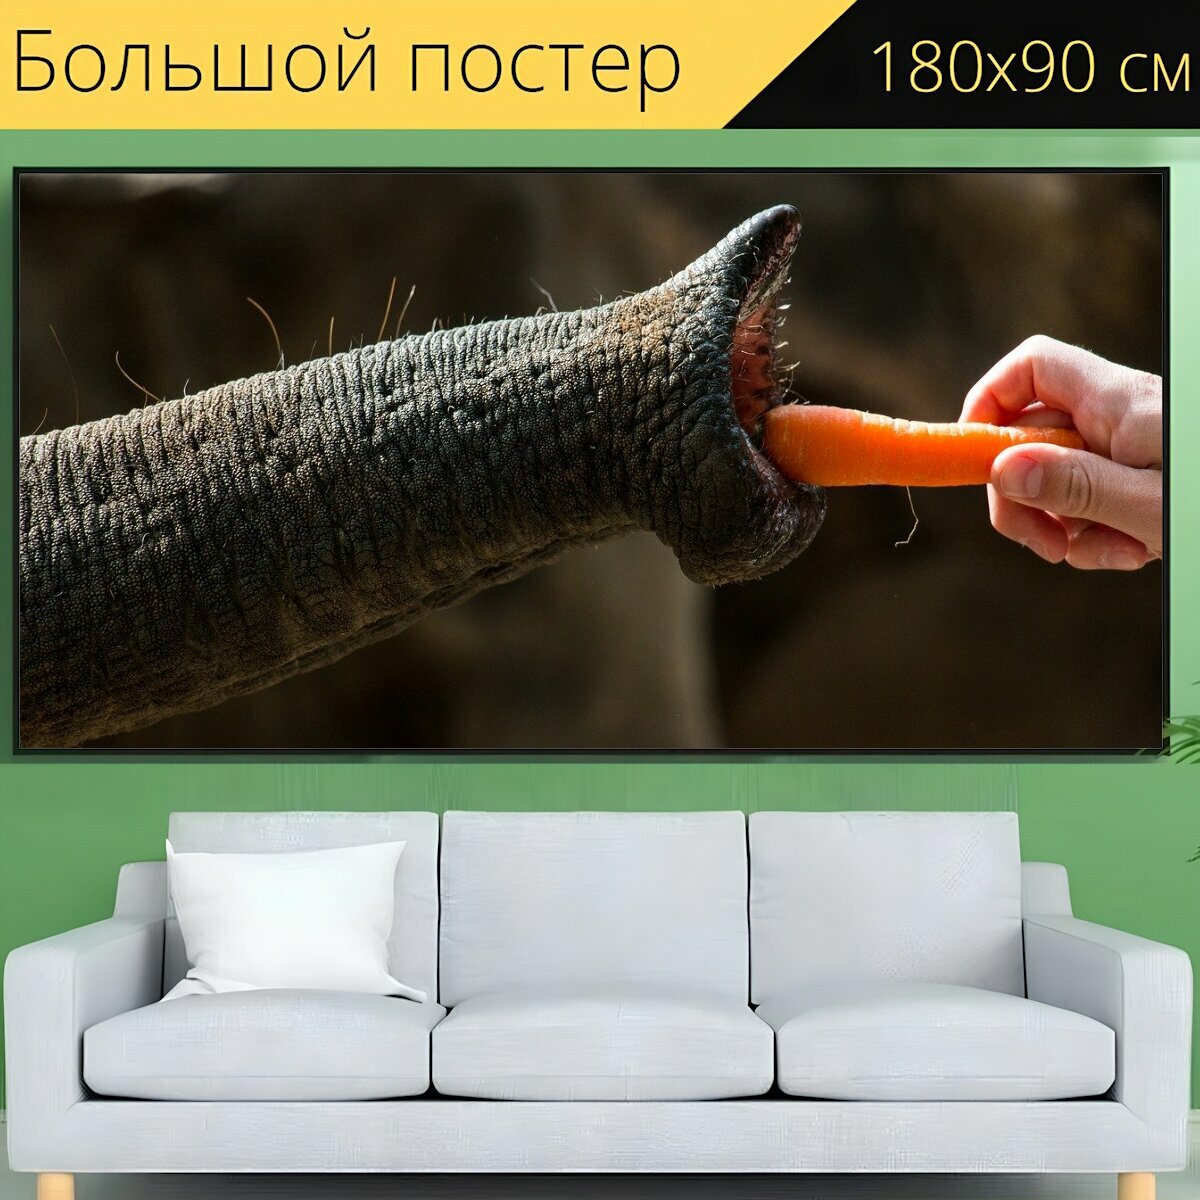 Большой постер "Природа, слон, ствол" 180 x 90 см. для интерьера